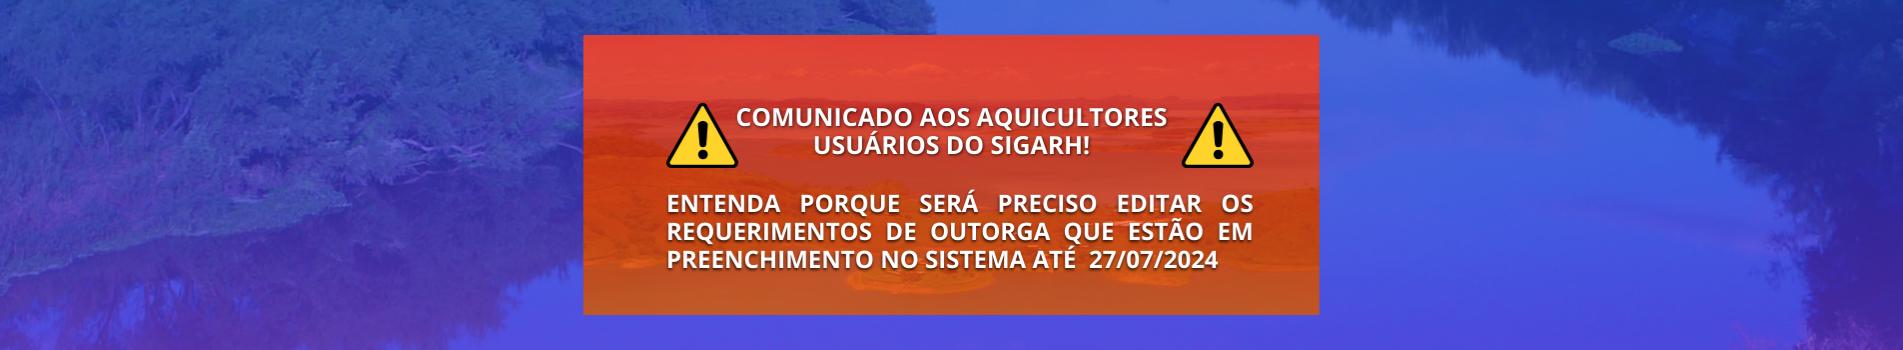 COMUNICADO AOS AQUICULTORES USUÁRIOS DO SIGARH